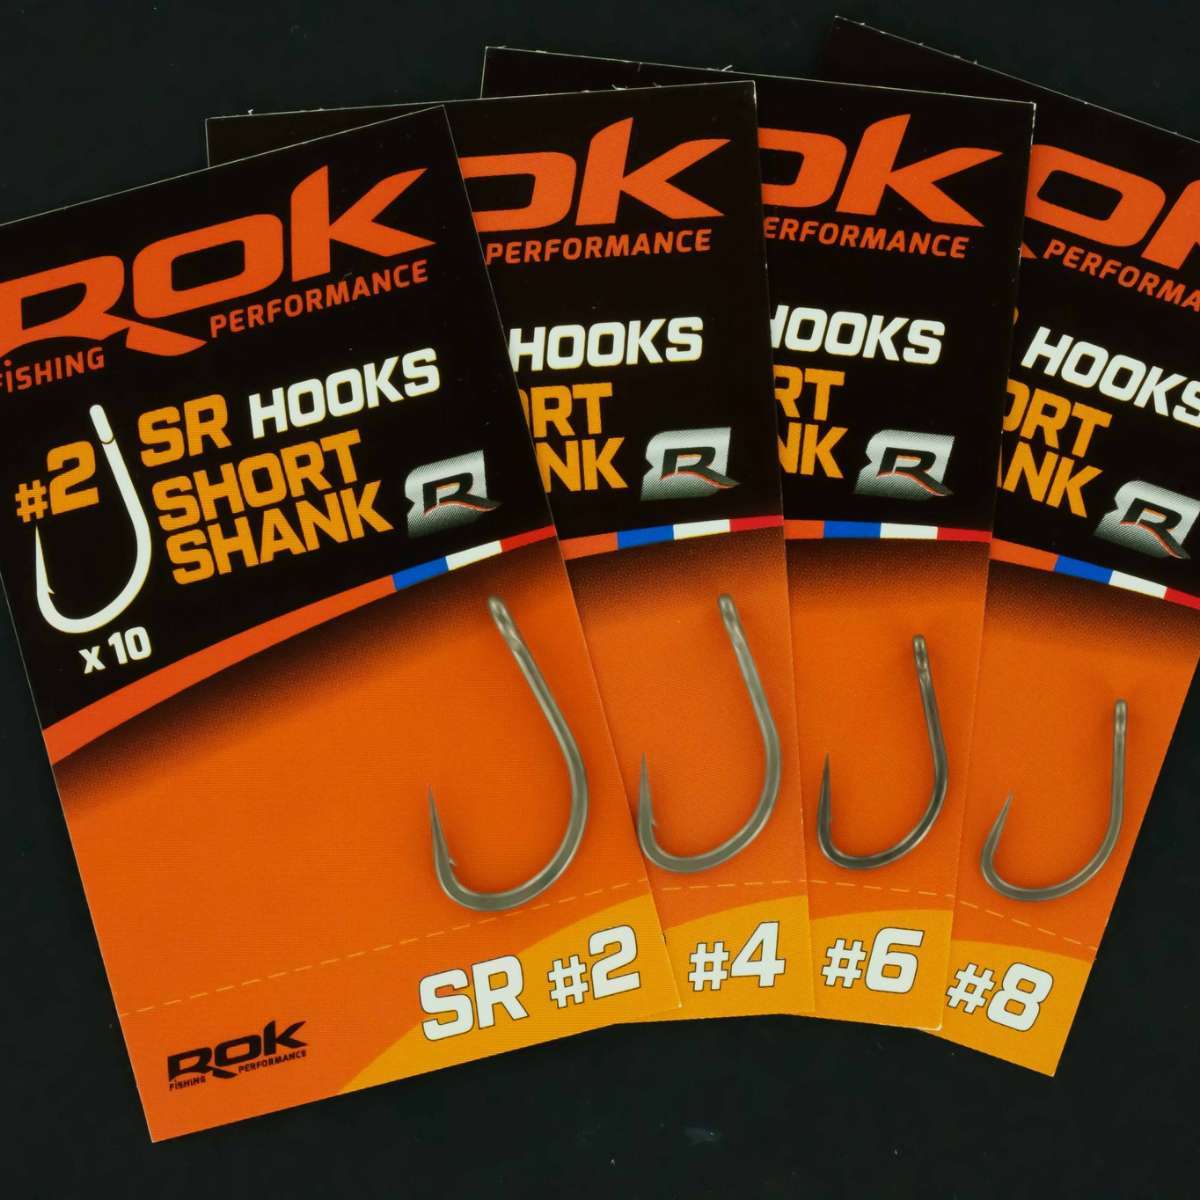 10 SR hooks short shank